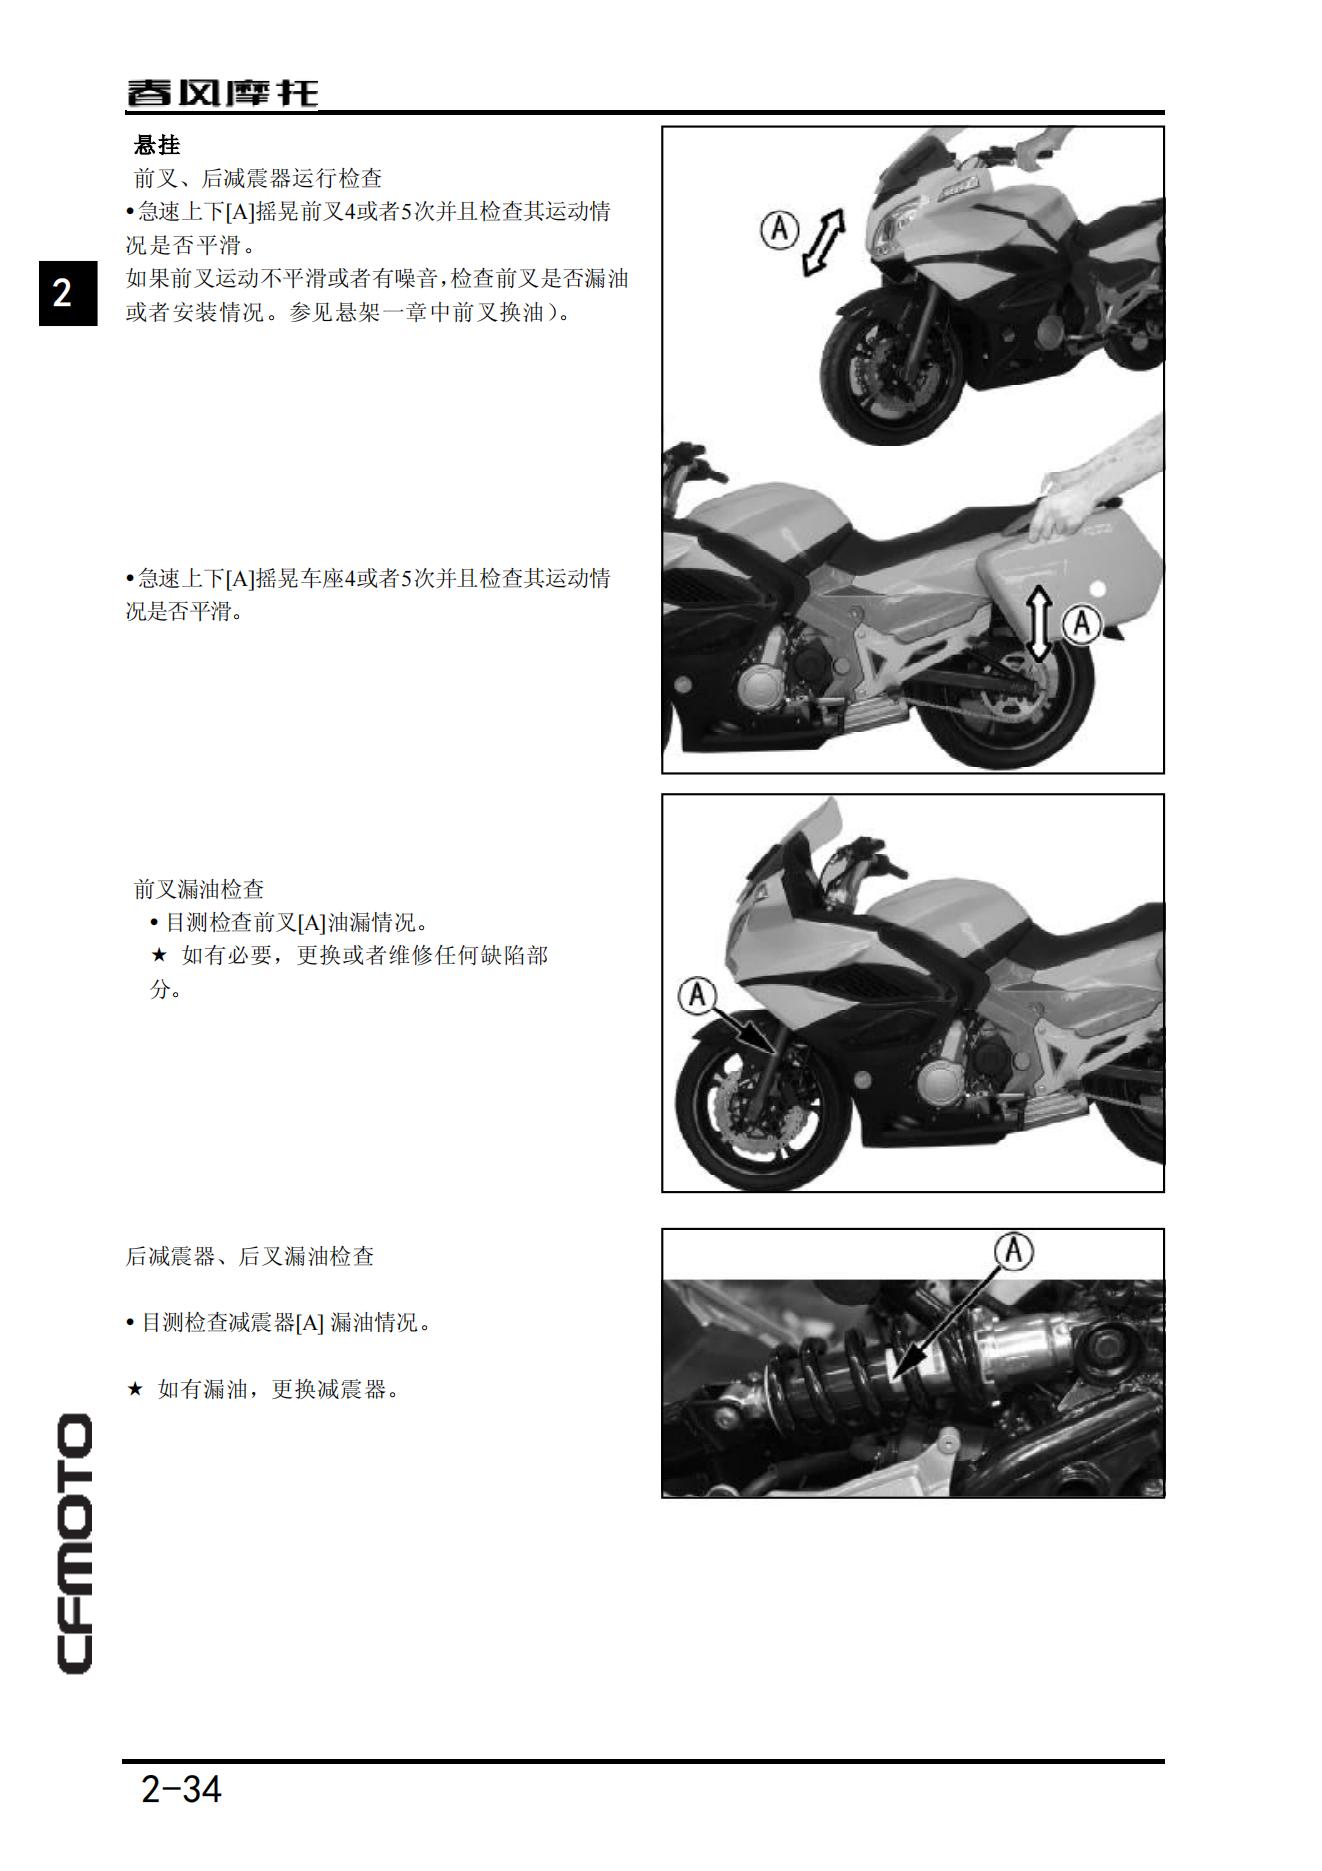 中文原版2015春风国宾650维修手册CF650-2 CF650J (ABS)春风650NK650cfmoto插图2